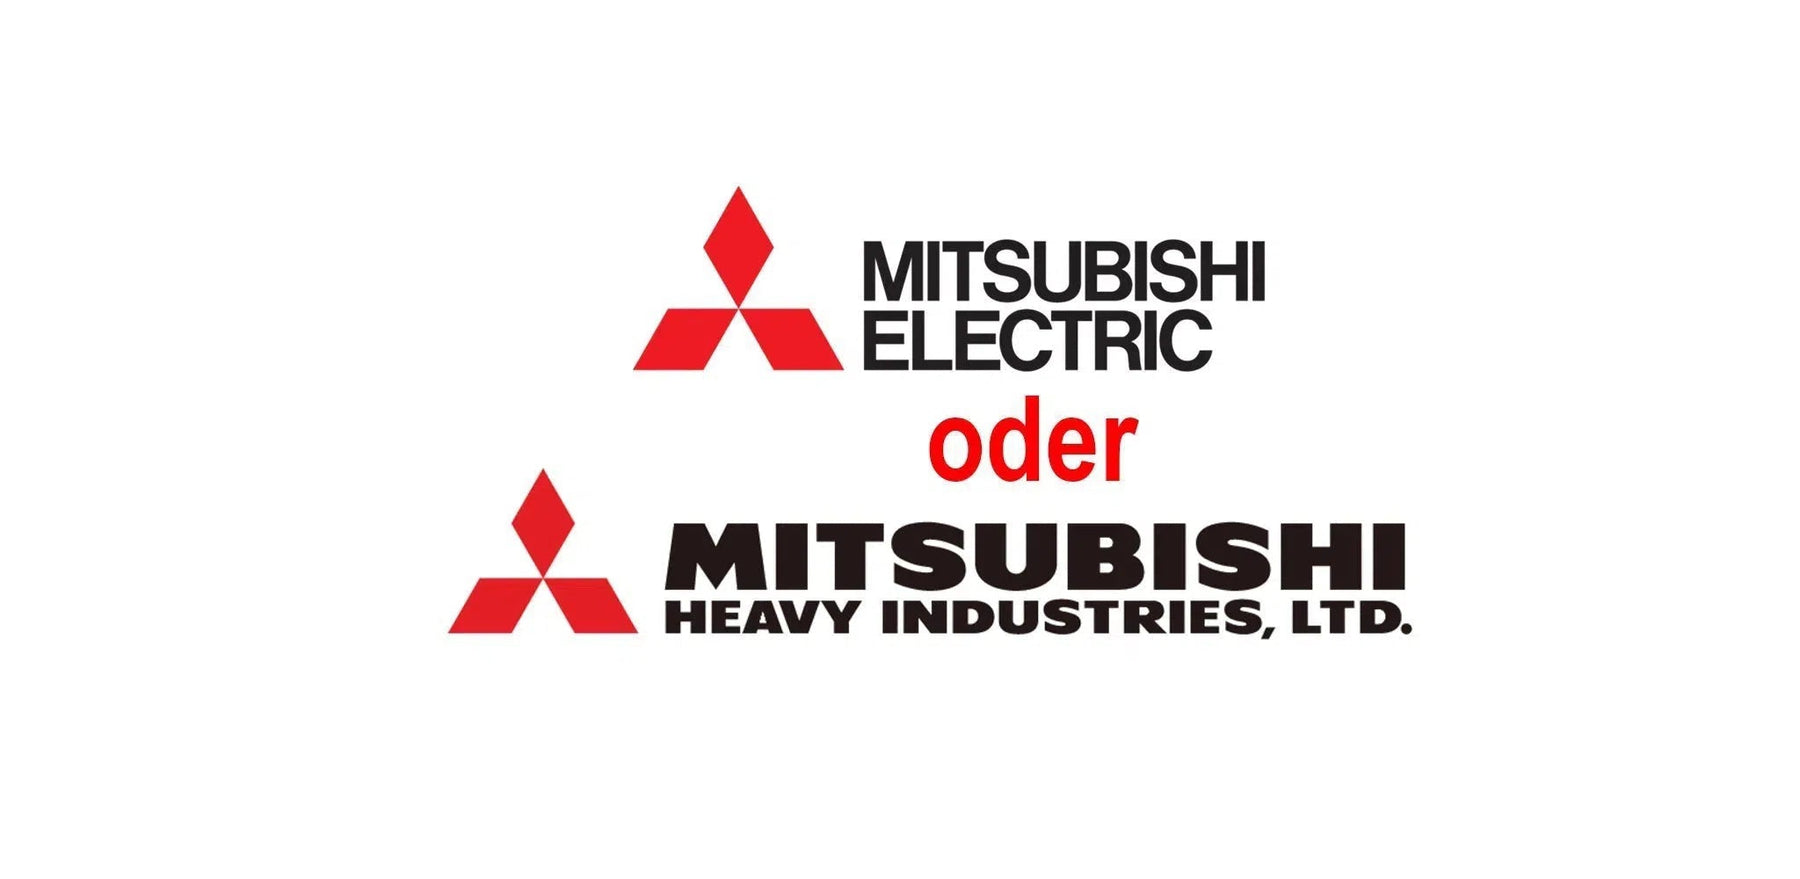 Vergleich der Klimaanlagen Mitsubishi Heavy und Mitsubishi Electric: Welche ist die richtige für Sie?